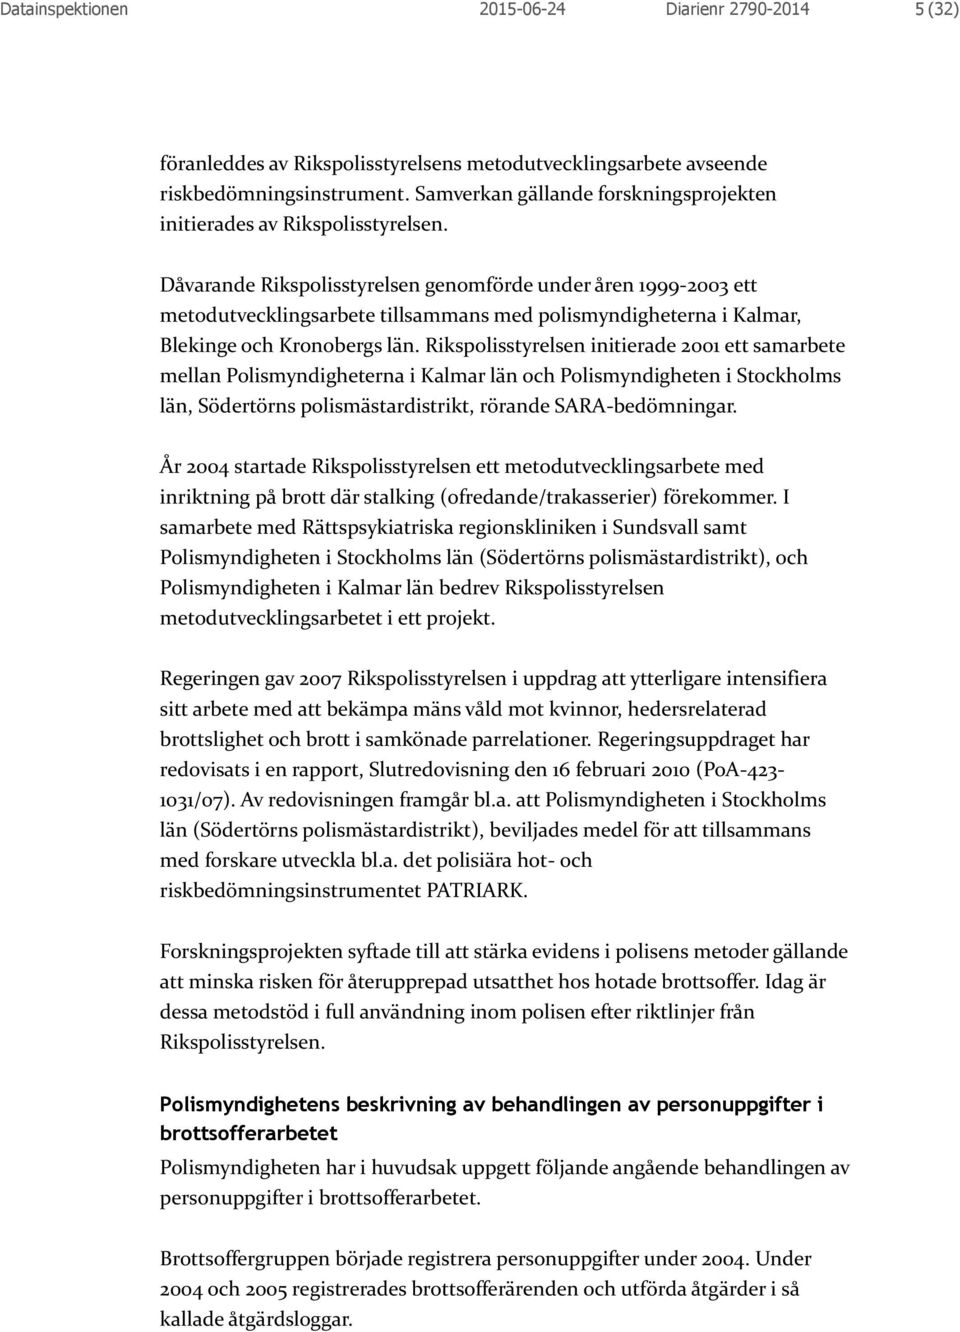 Dåvarande Rikspolisstyrelsen genomförde under åren 1999-2003 ett metodutvecklingsarbete tillsammans med polismyndigheterna i Kalmar, Blekinge och Kronobergs län.